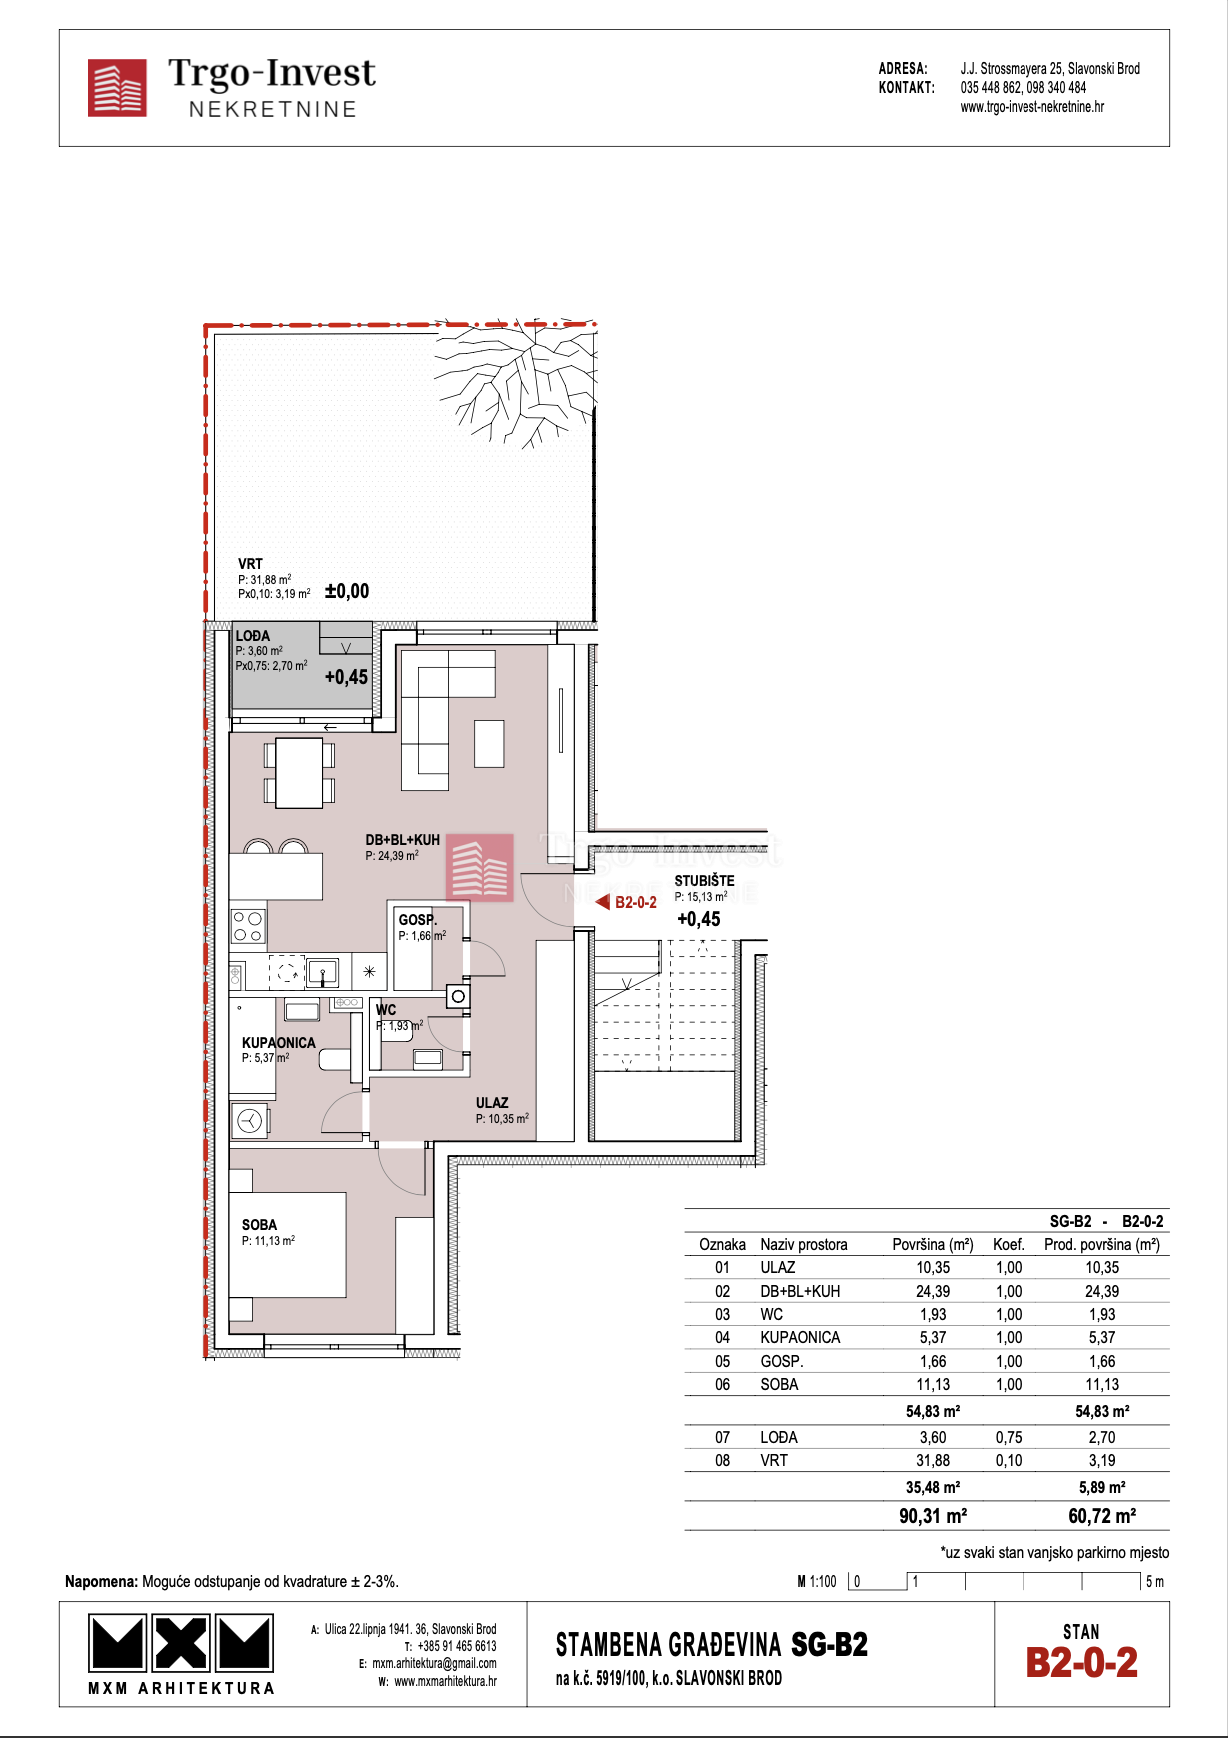 2-Zi., Wohnung, 64m², 1 Etage